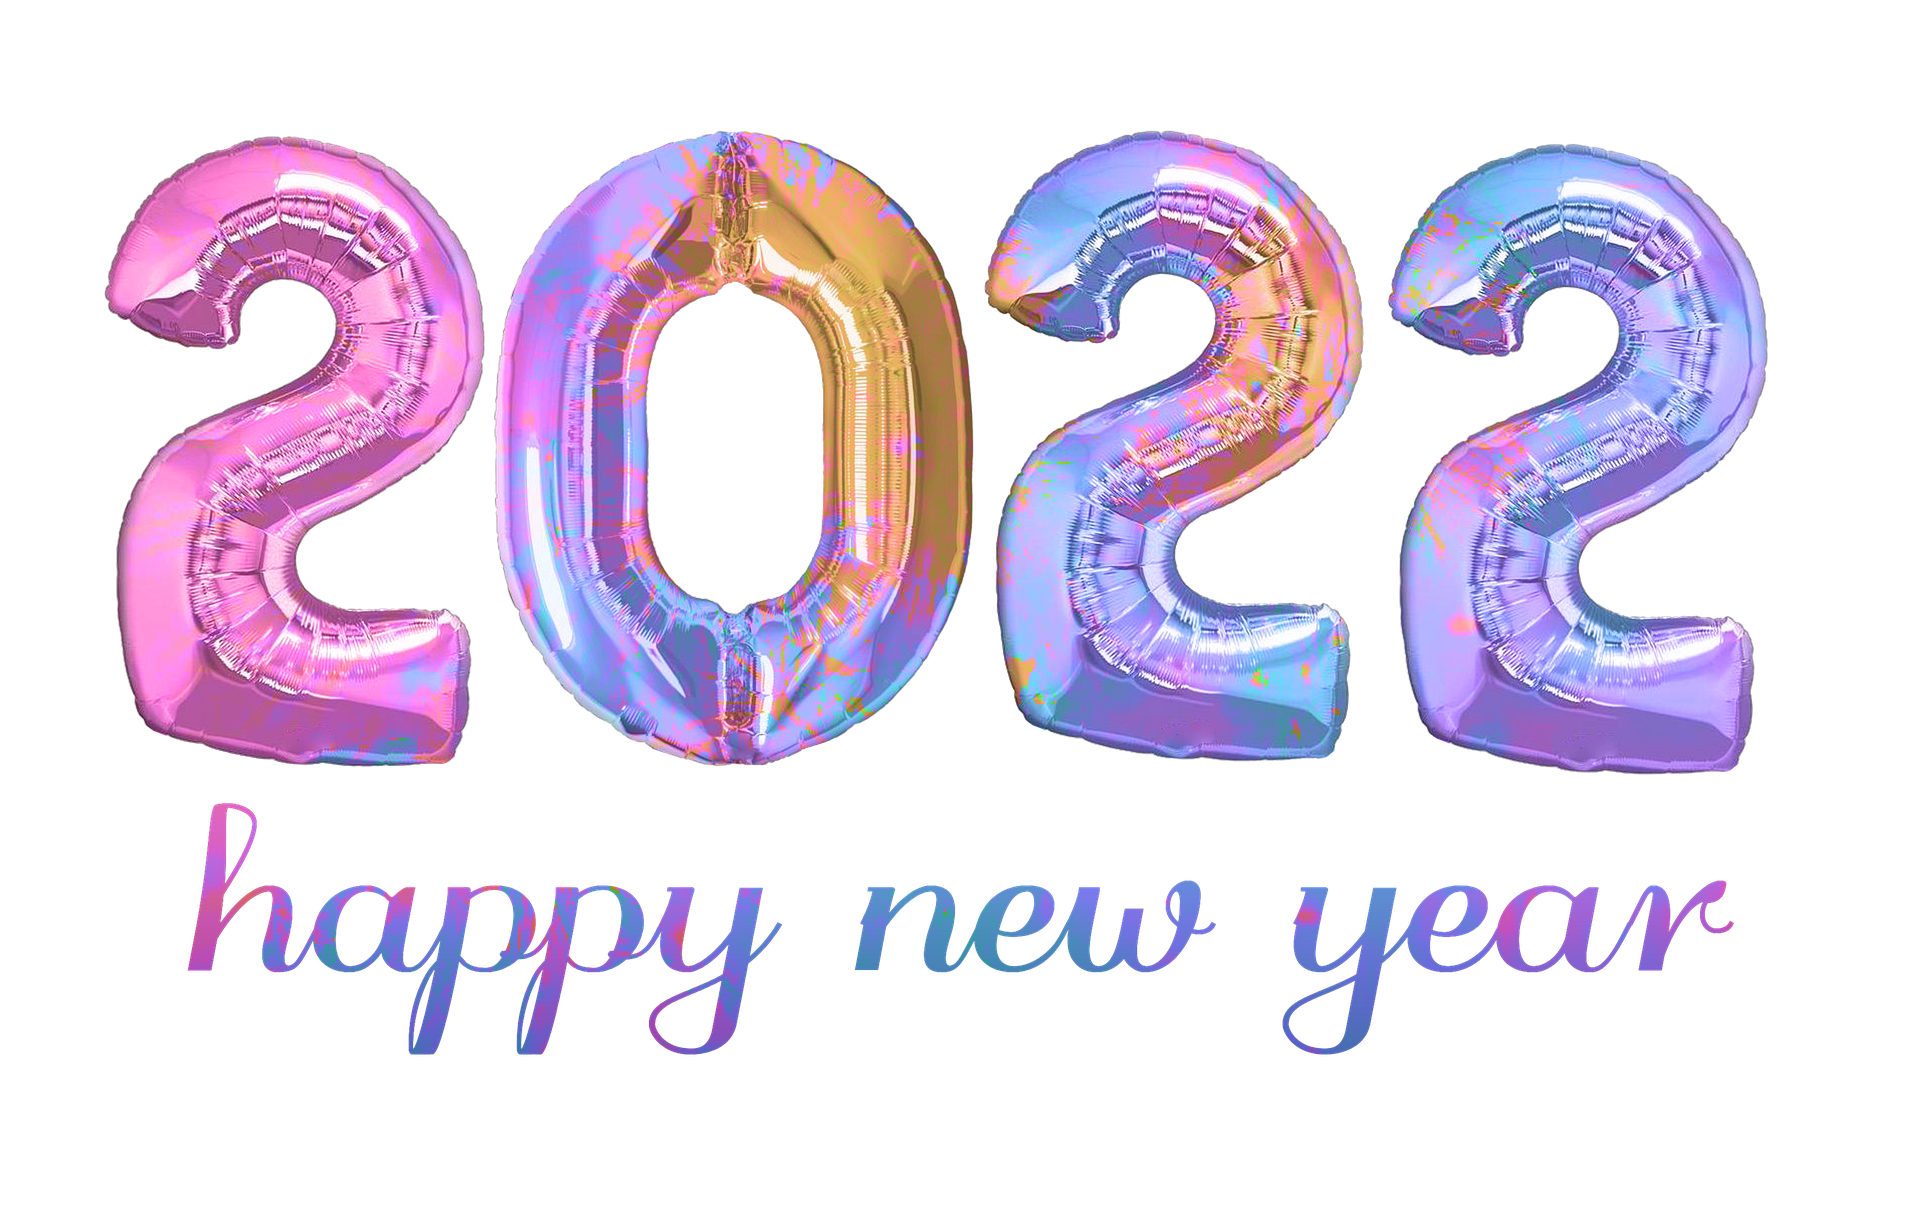 Dia de ano novo e dia de ano novo em 2022